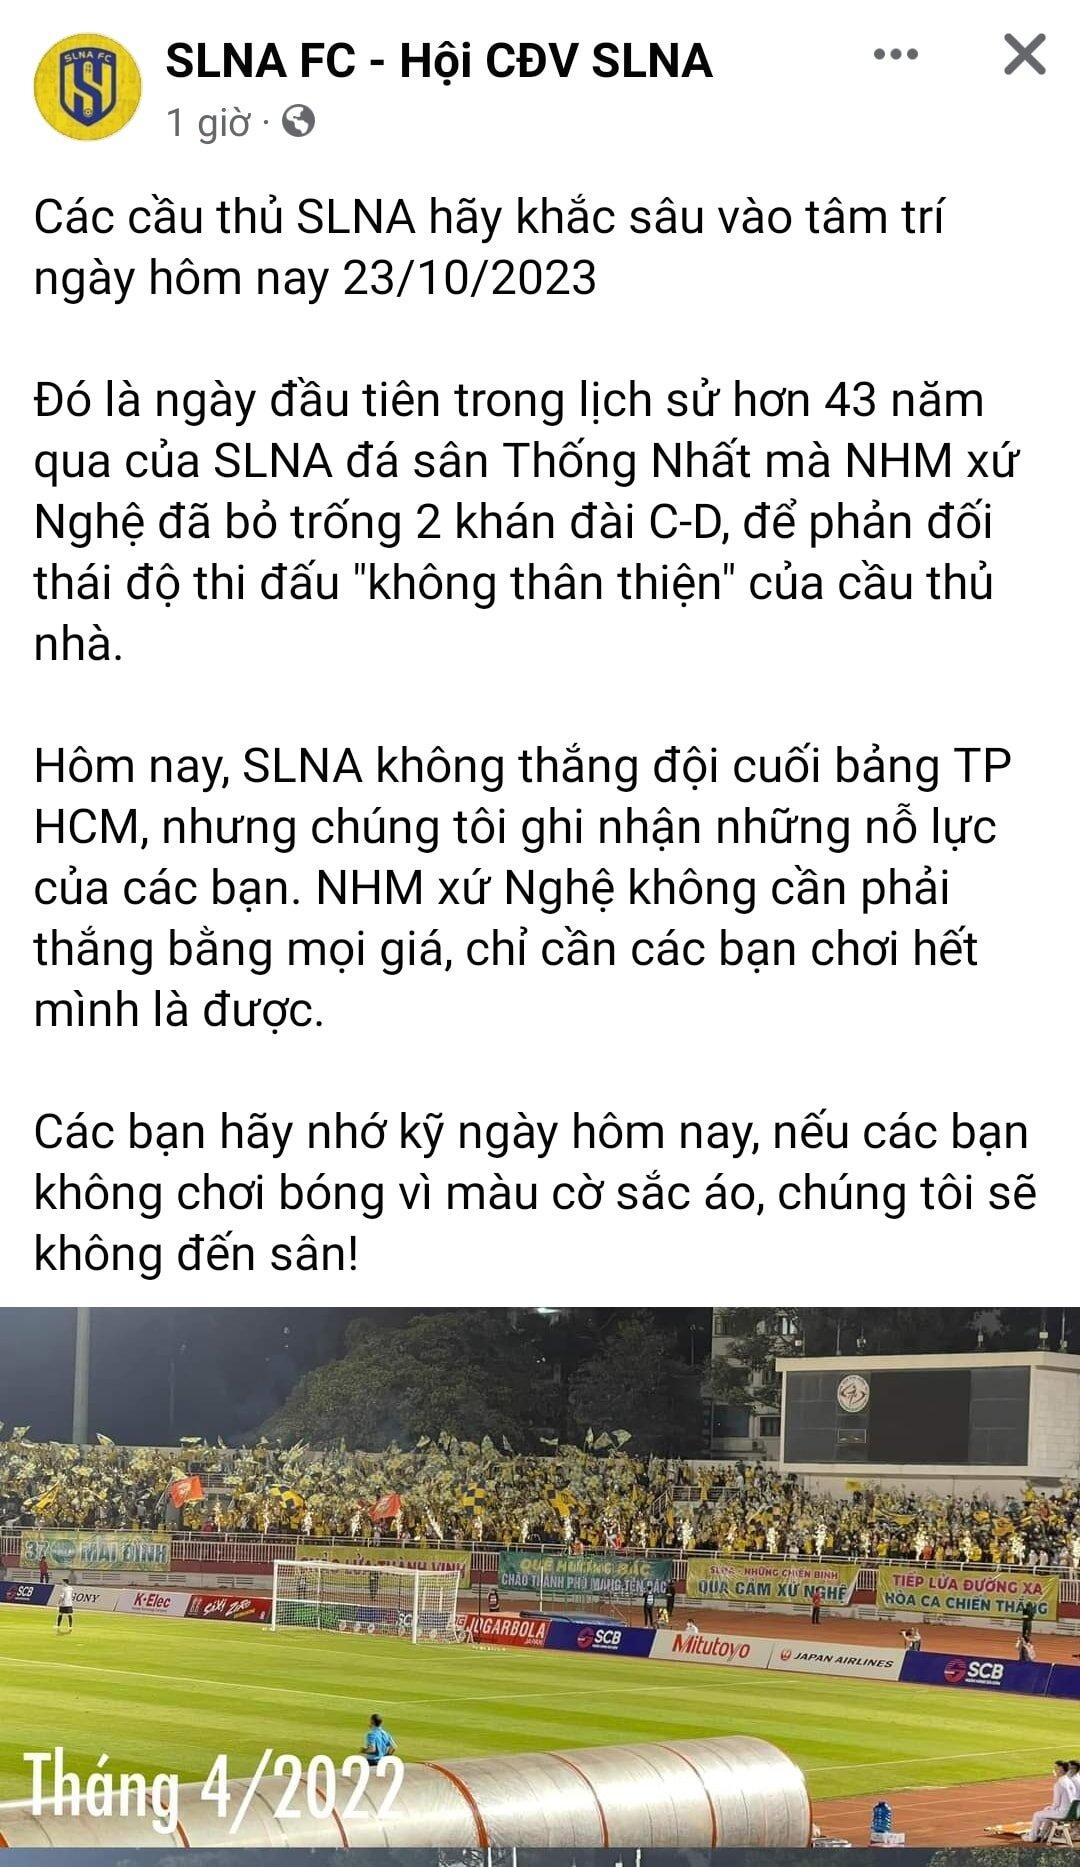 Thông báo của Hội cổ động viên sau trận đấu với Thành phố Hồ Chí MInh (Ảnh: Internet)